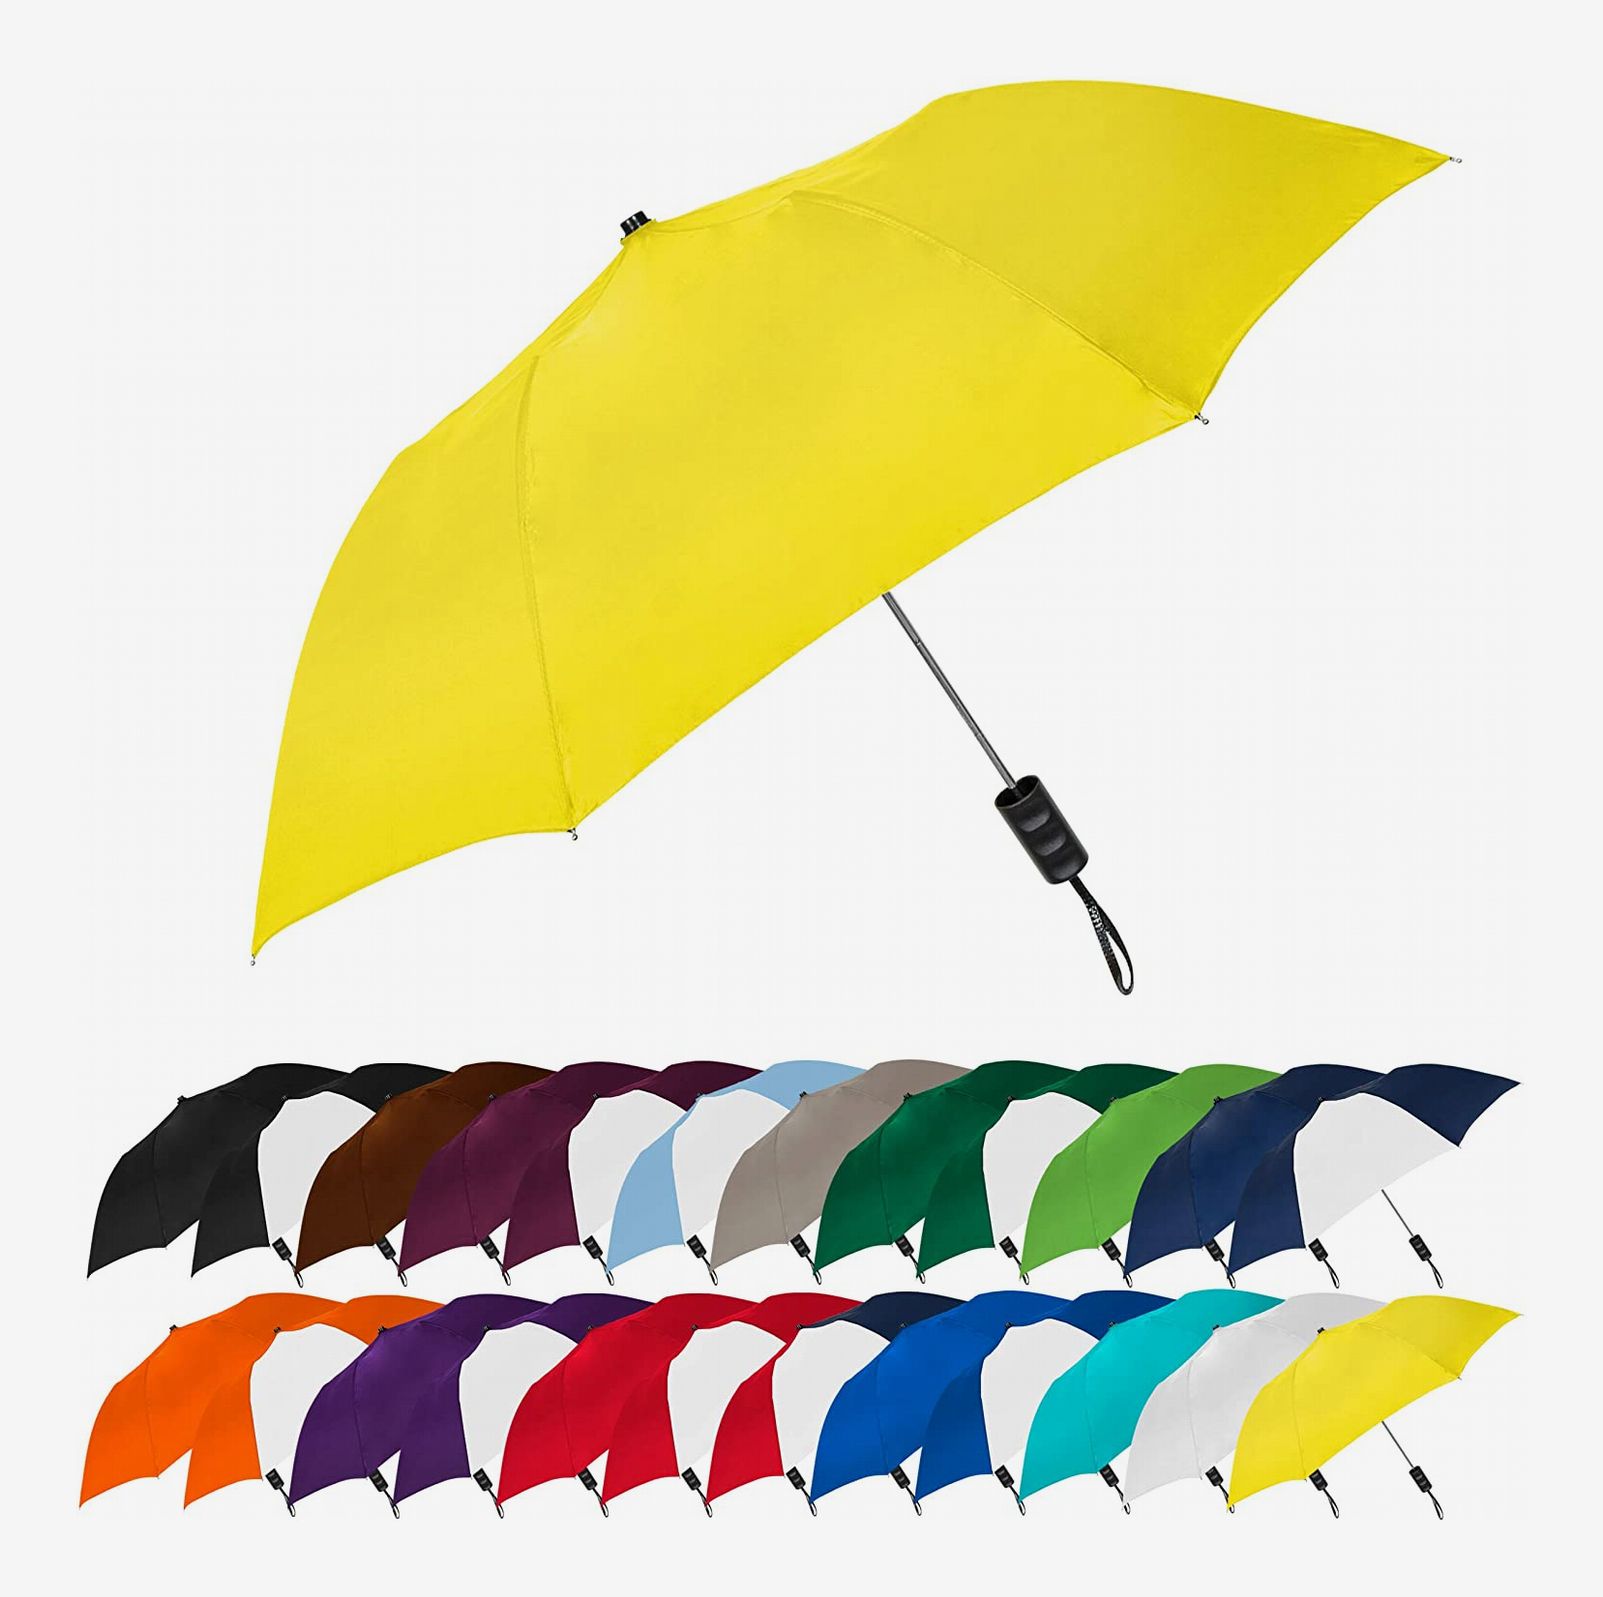 Automatic Umbrella Windproof and Compact Umbrella Folding Umbrella Lightweight Black Travel Umbrella Wind Resistant Umbrellas Qubra Double Canopy Umbrella 